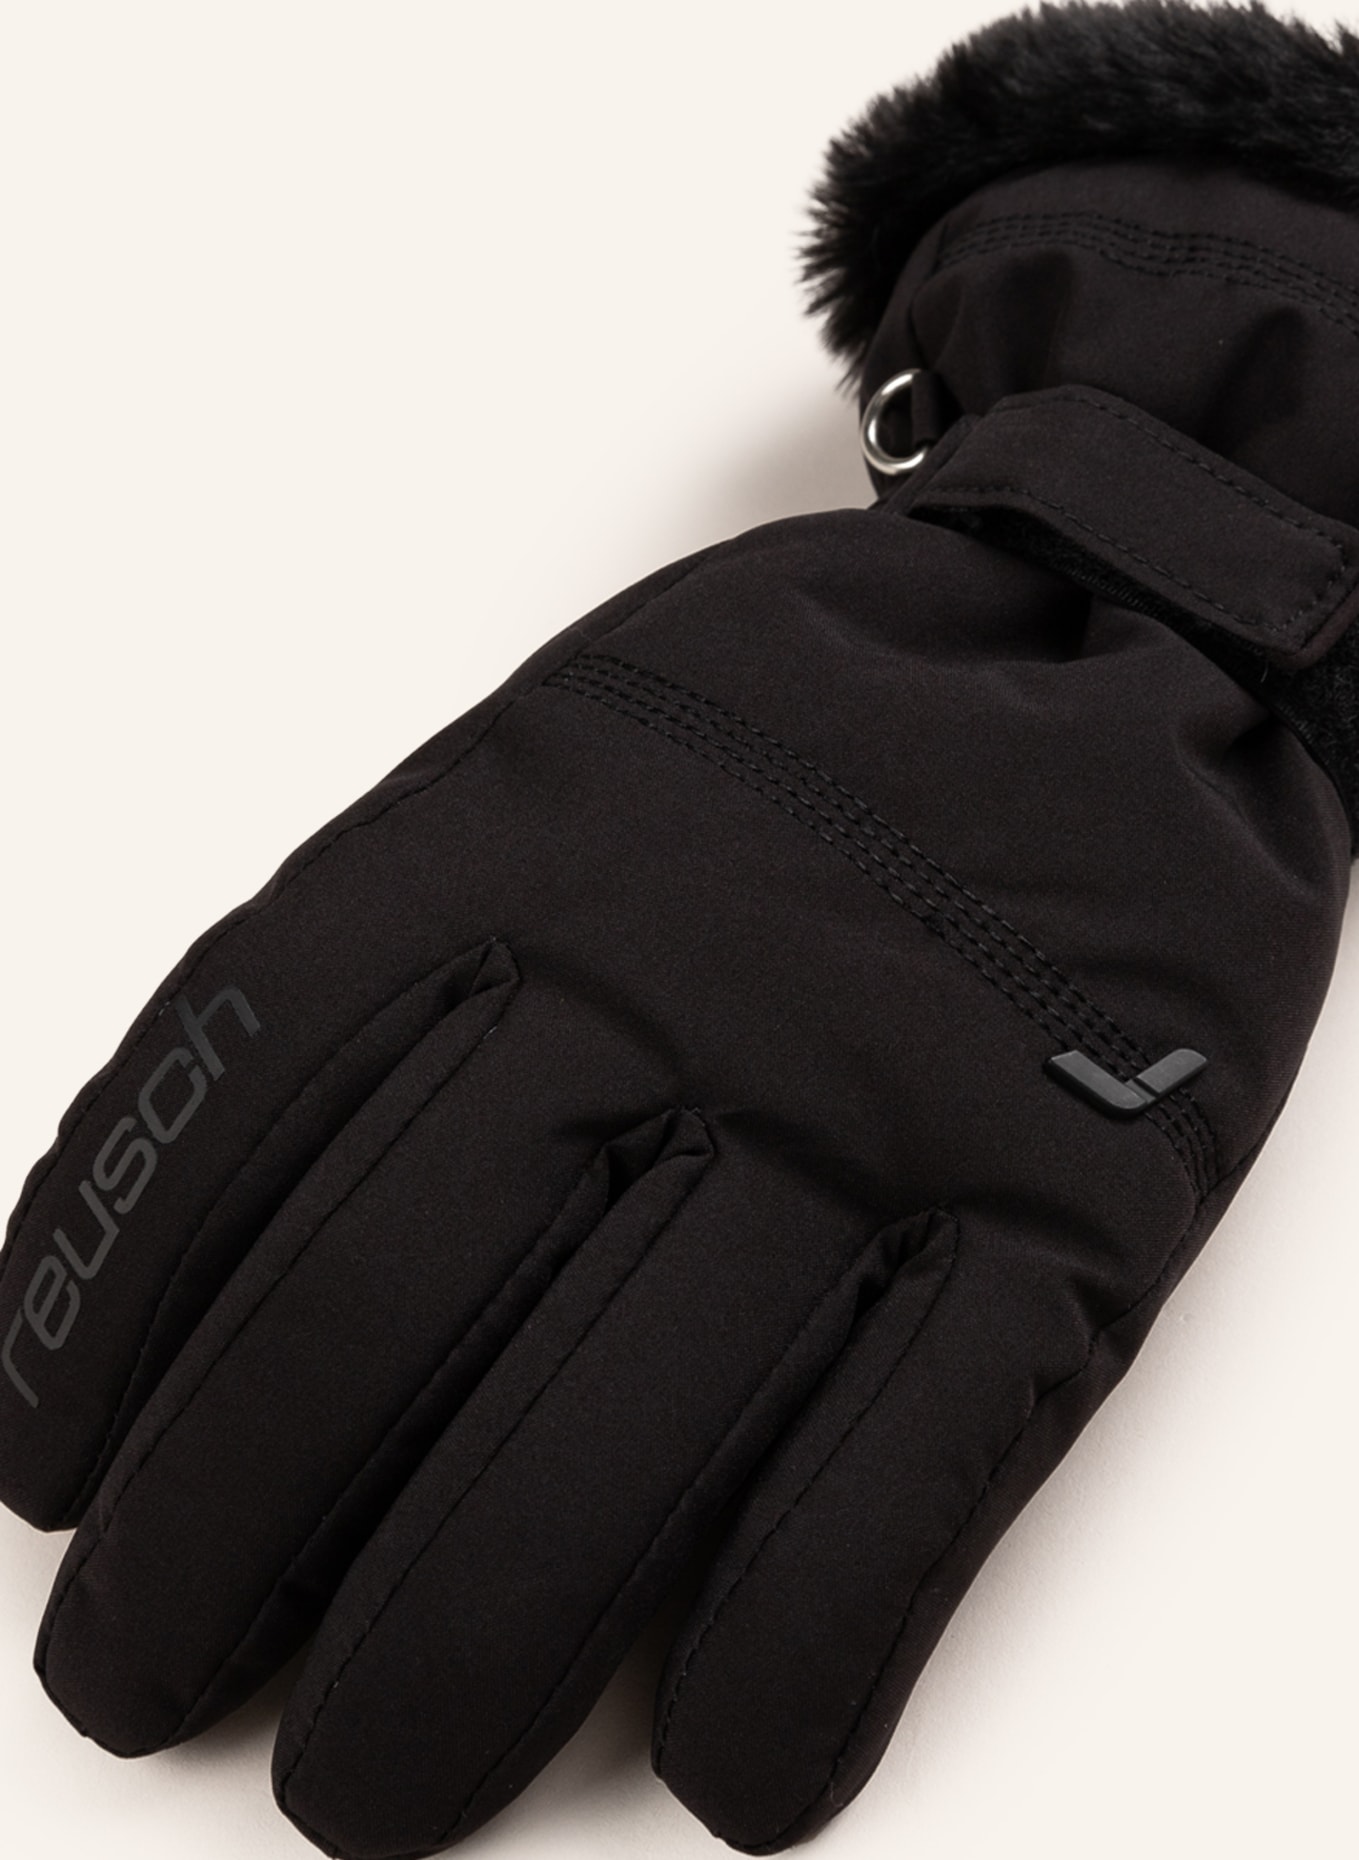 reusch Ski gloves LUNA R-TEX XT in black